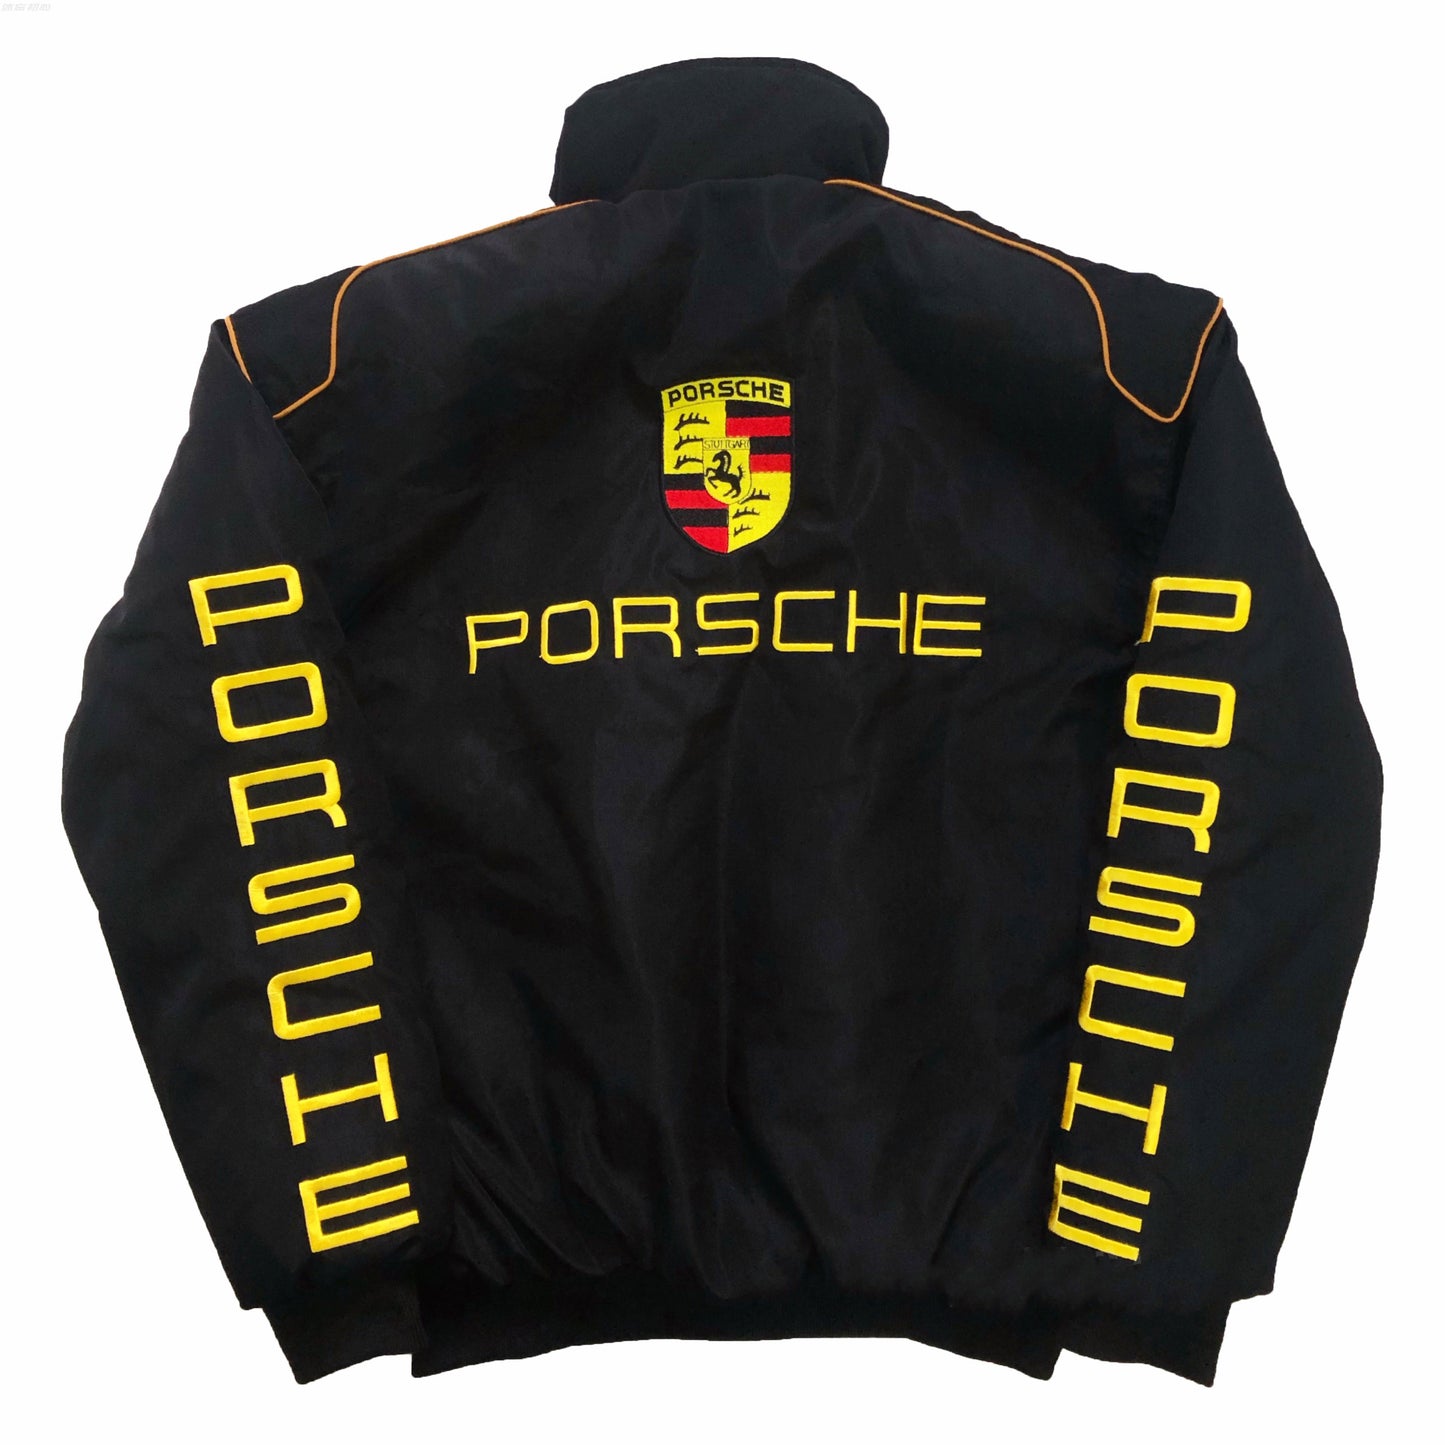 Porsche Racing Jacket - Black